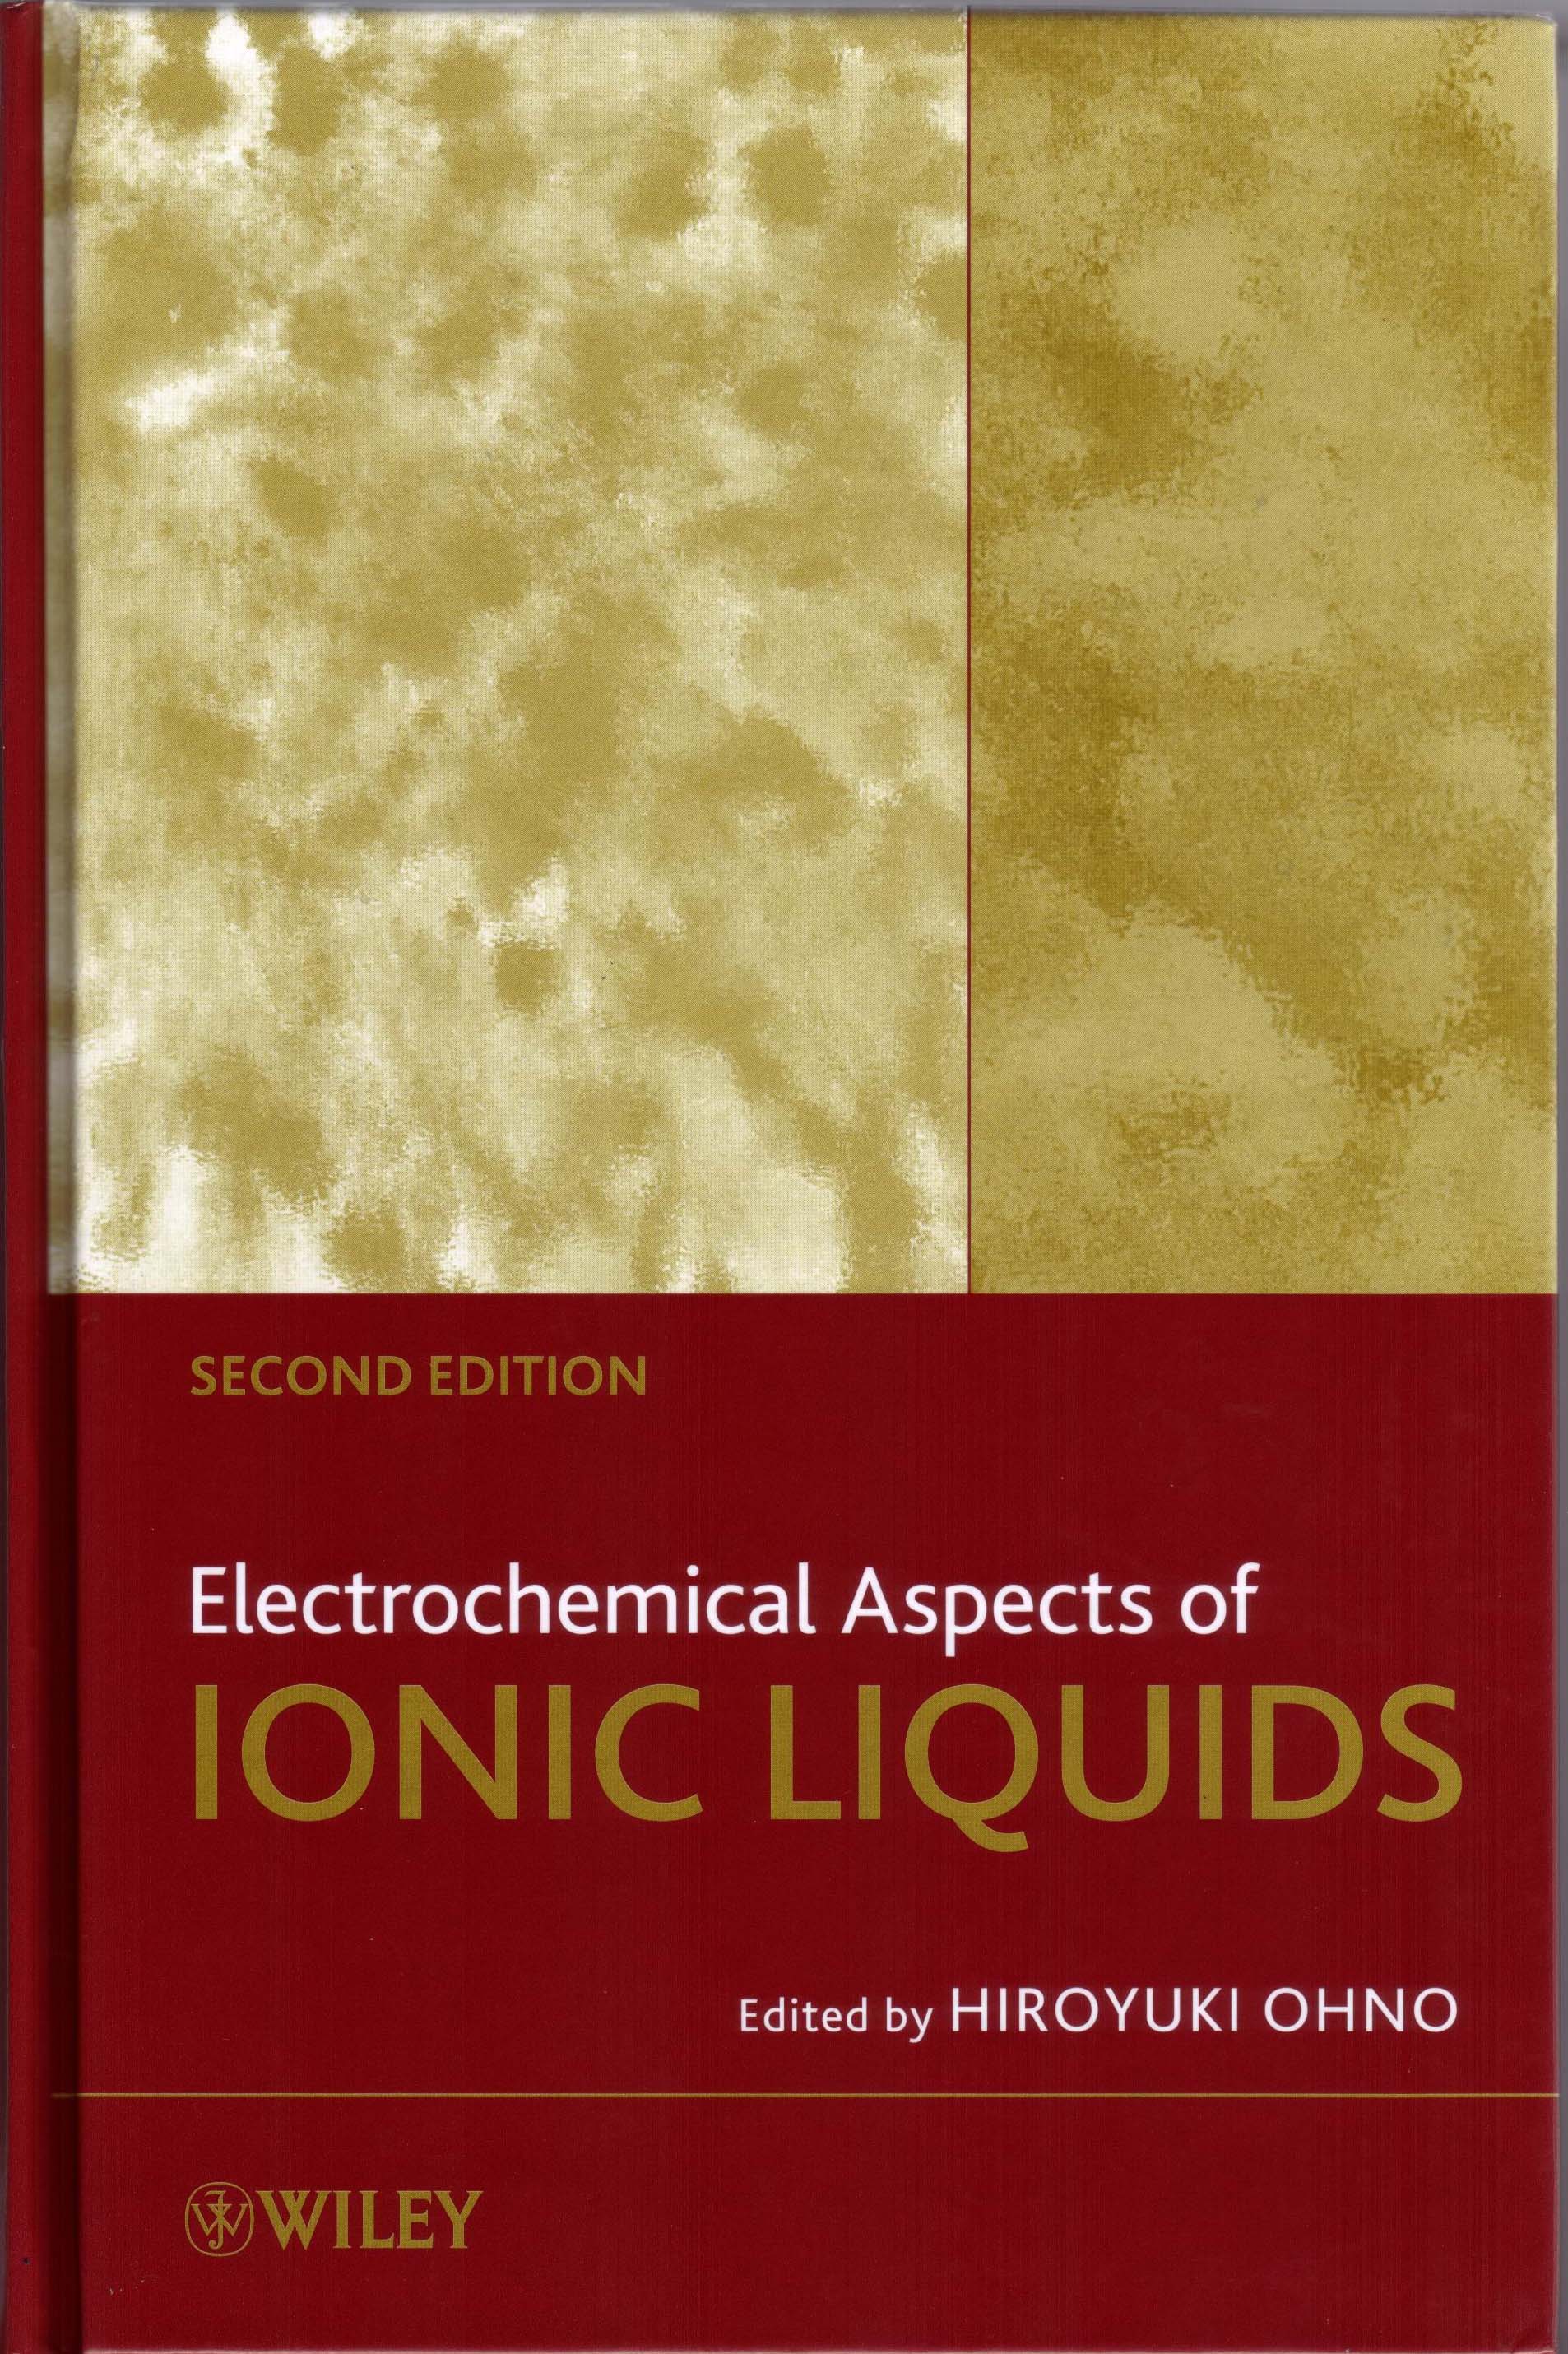 ELECTROCHEMICAL ASPECTS OF IONIC LIQUIDS